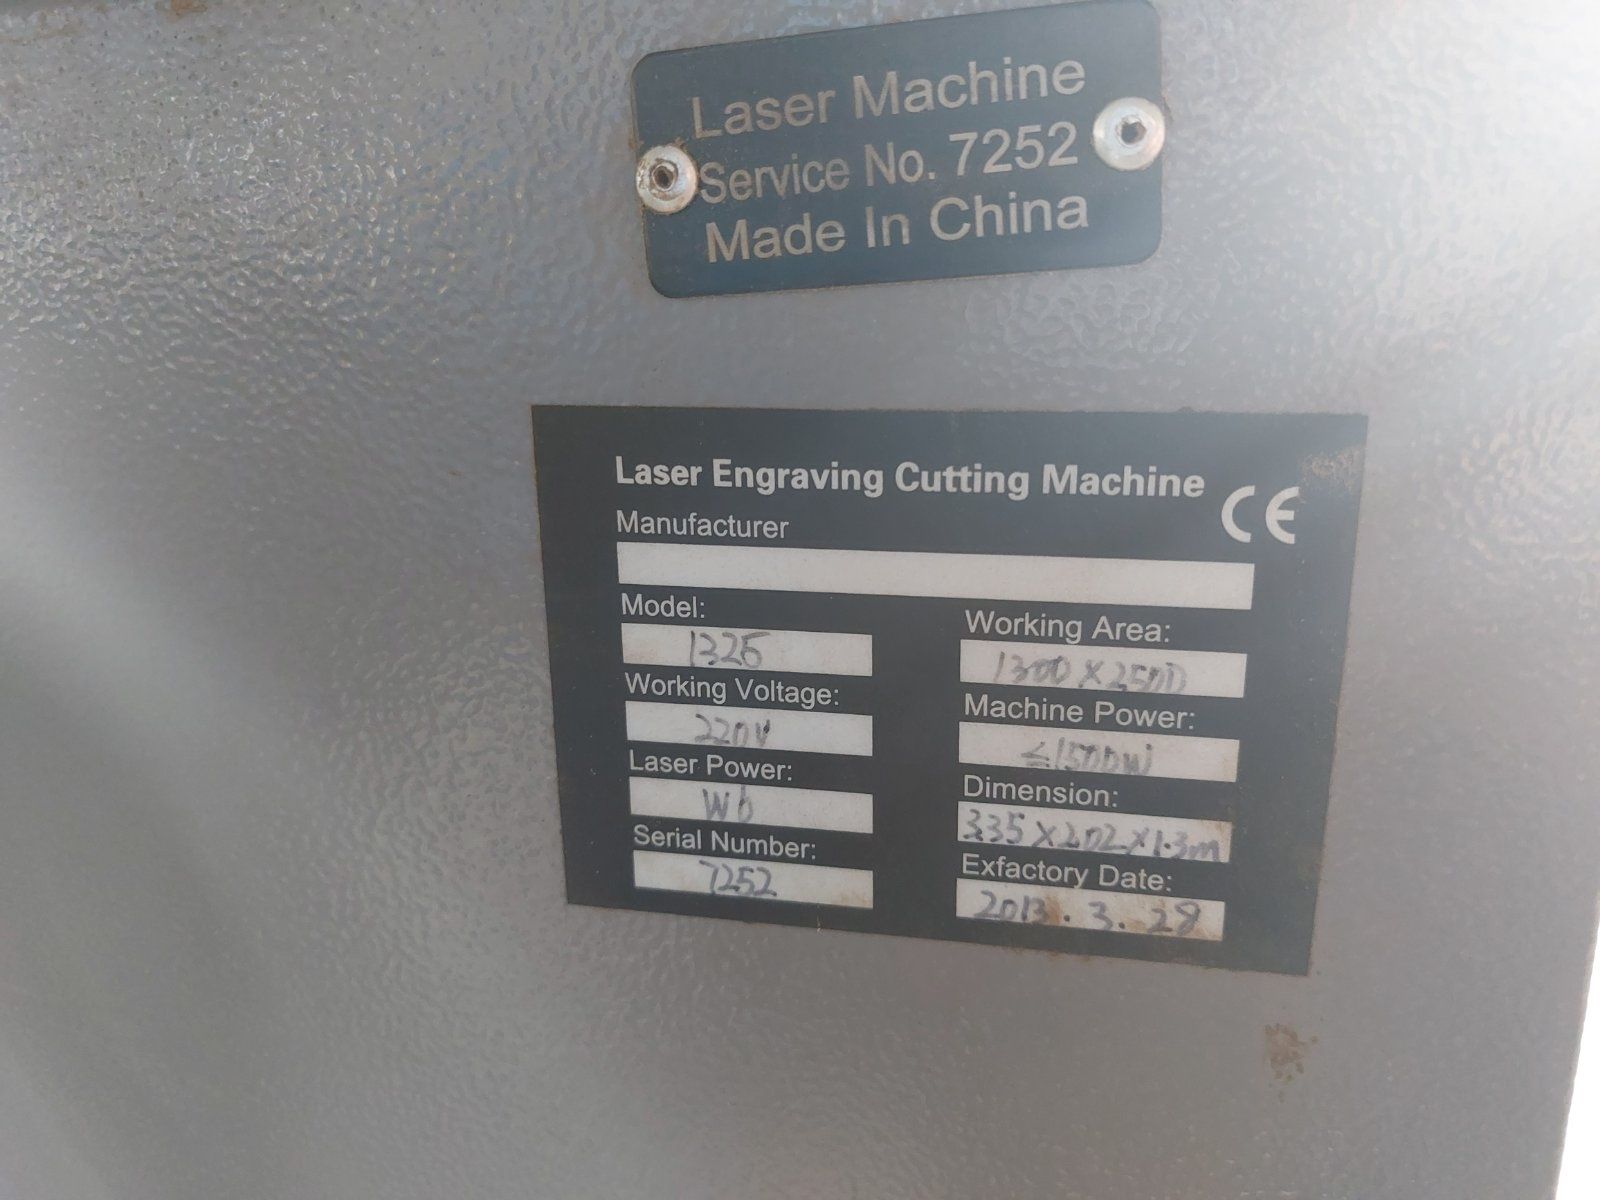 китайски лазер с размери 2500 мм.х 1300 мм